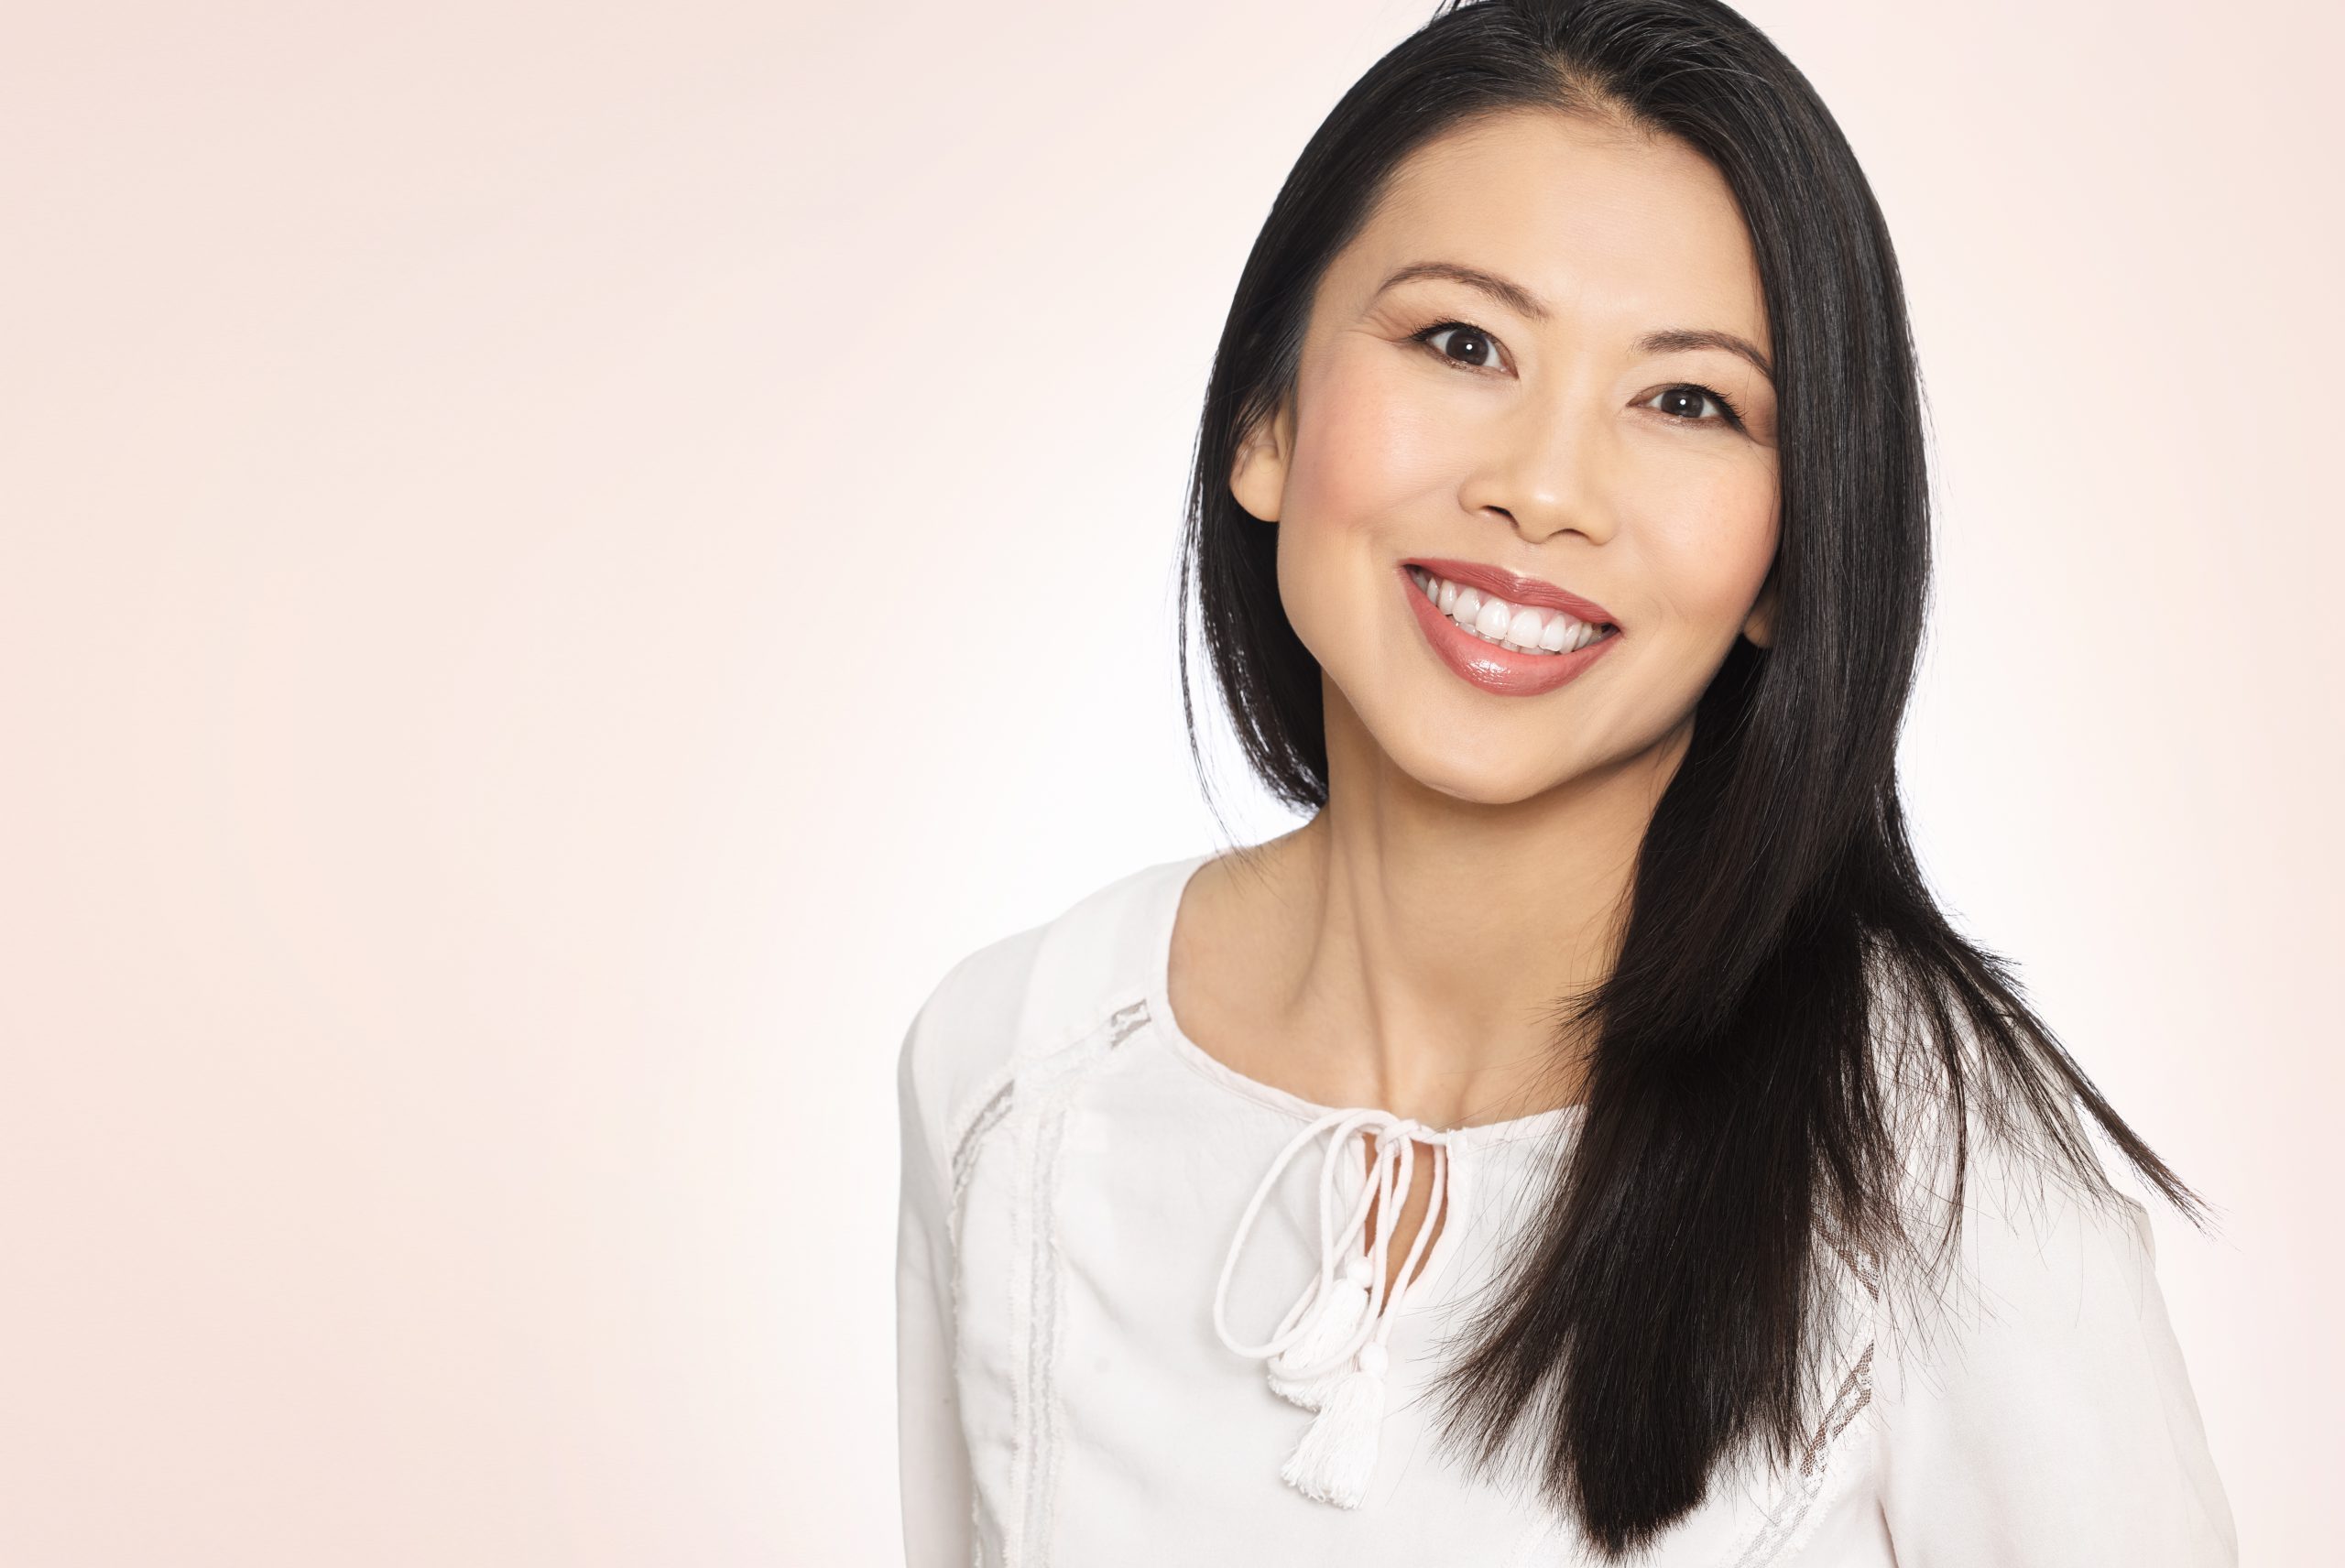 Comment rencontrer une femme asiatique : notre guide pratique